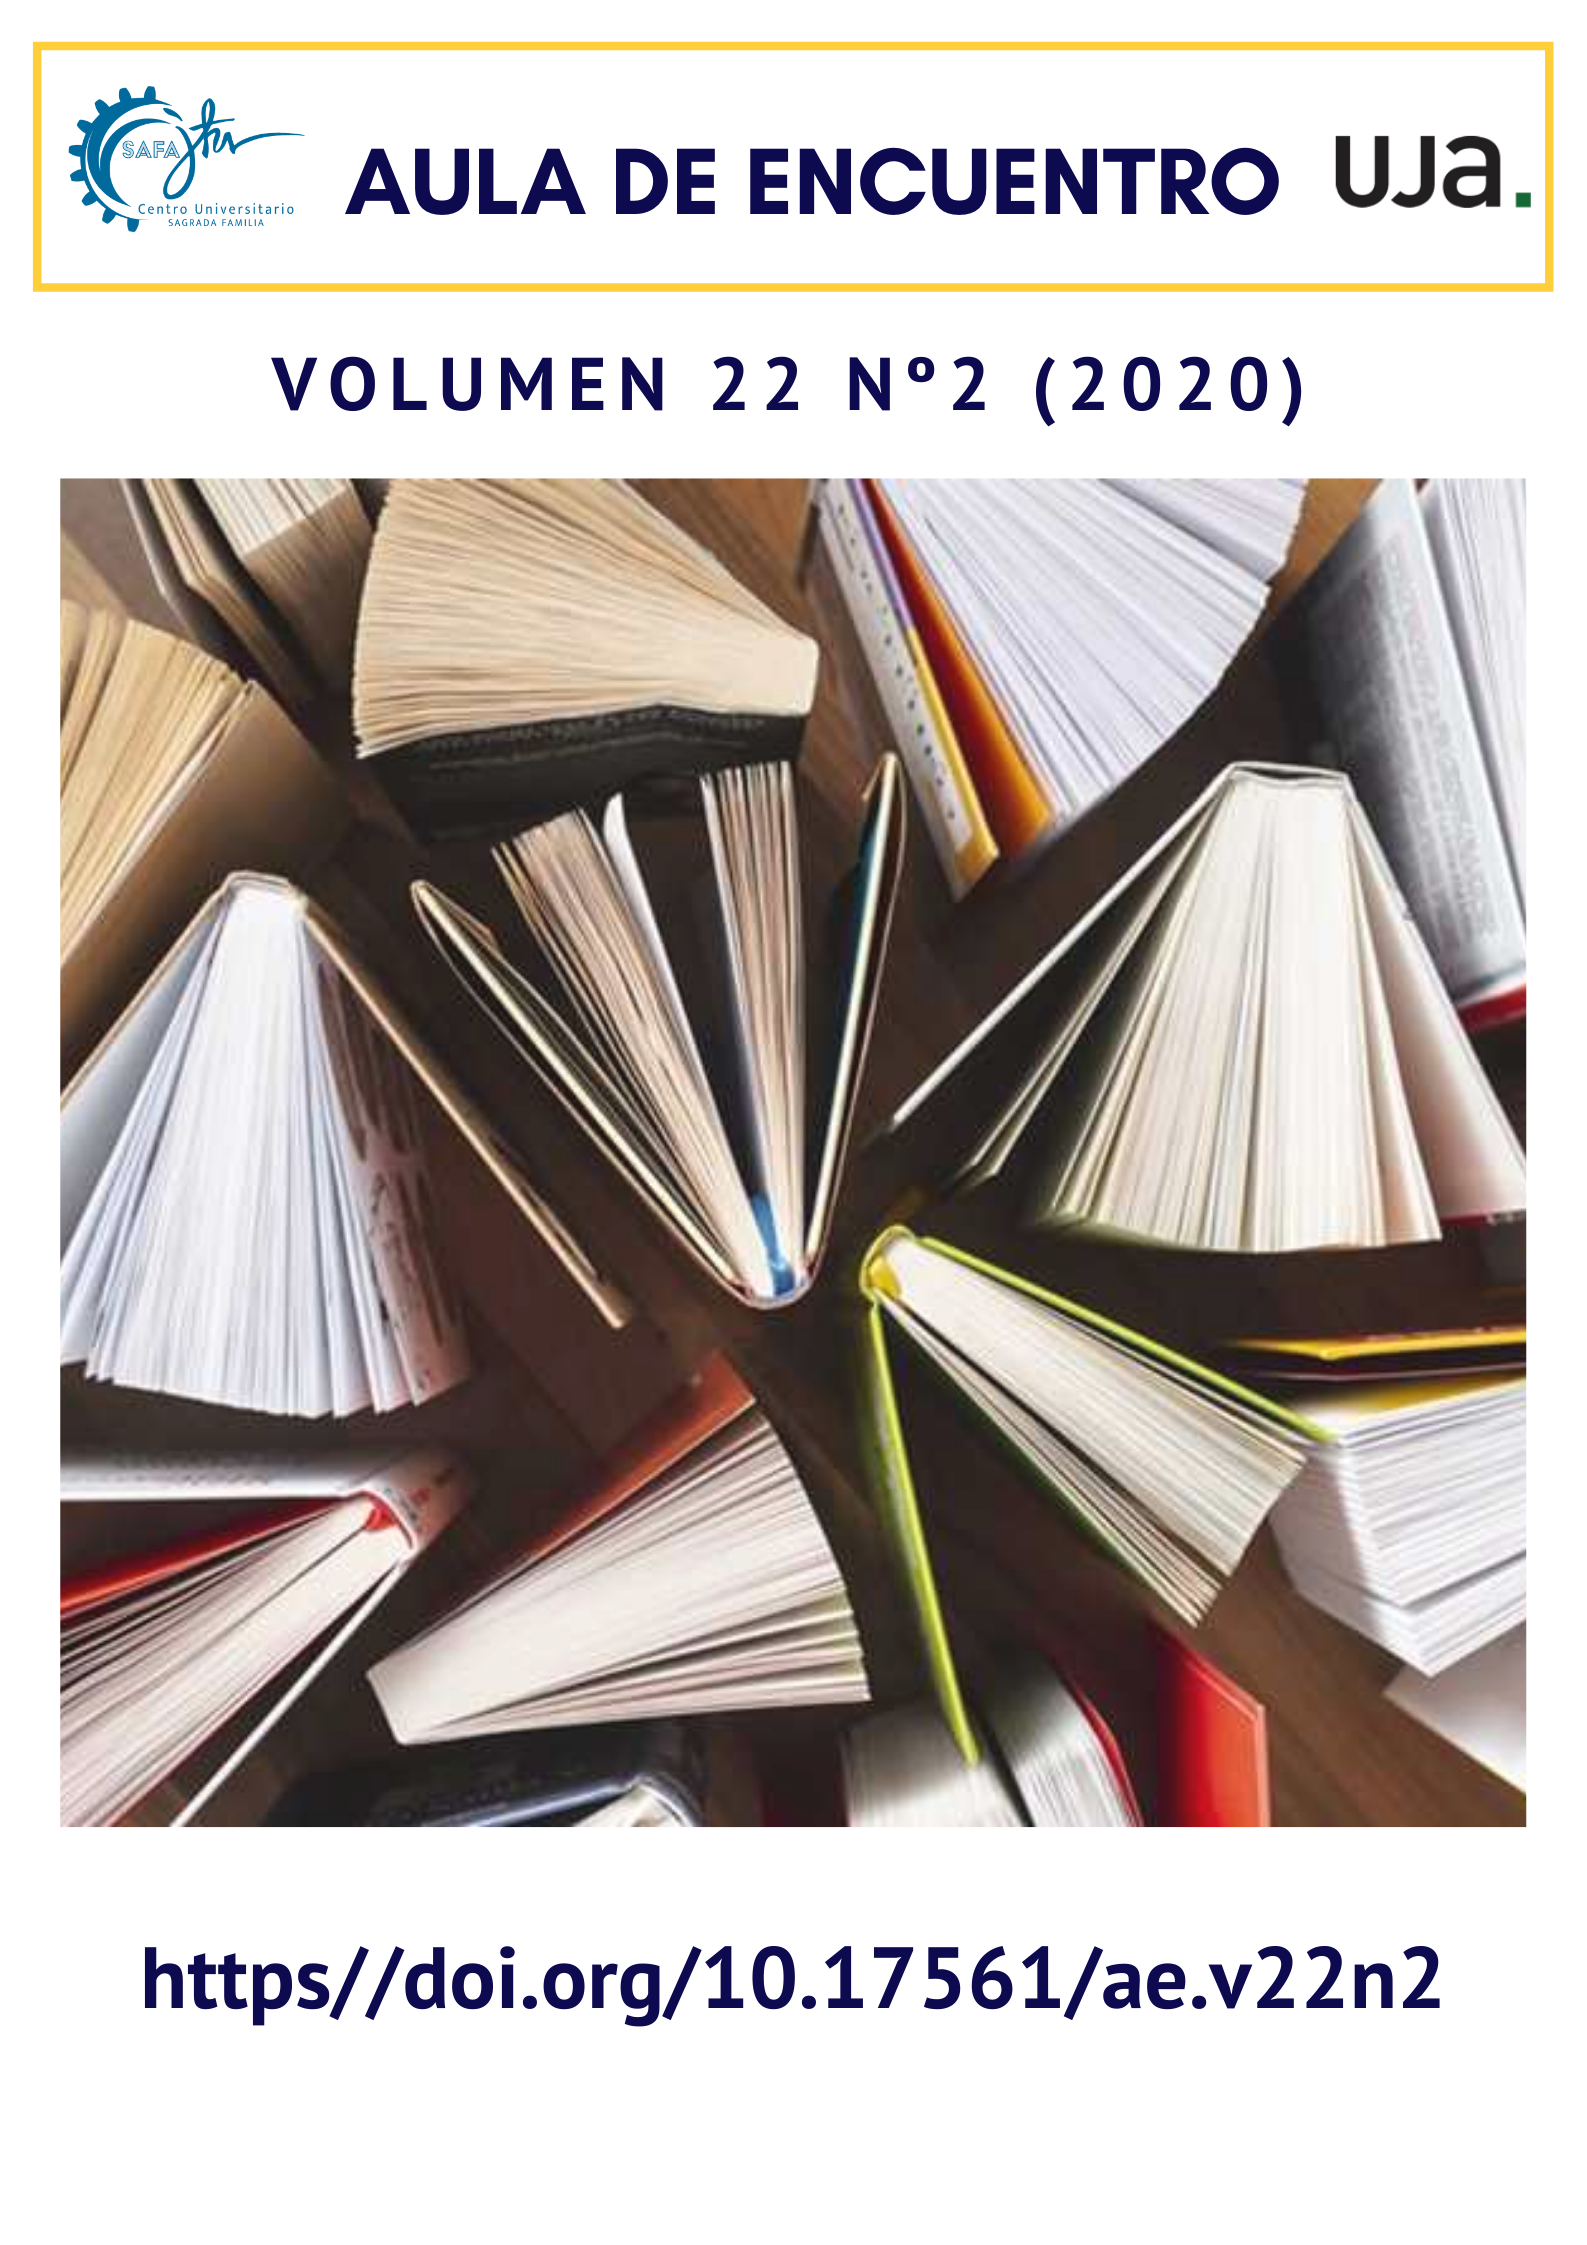 					Ver Vol. 22 Núm. 2 (2020)
				